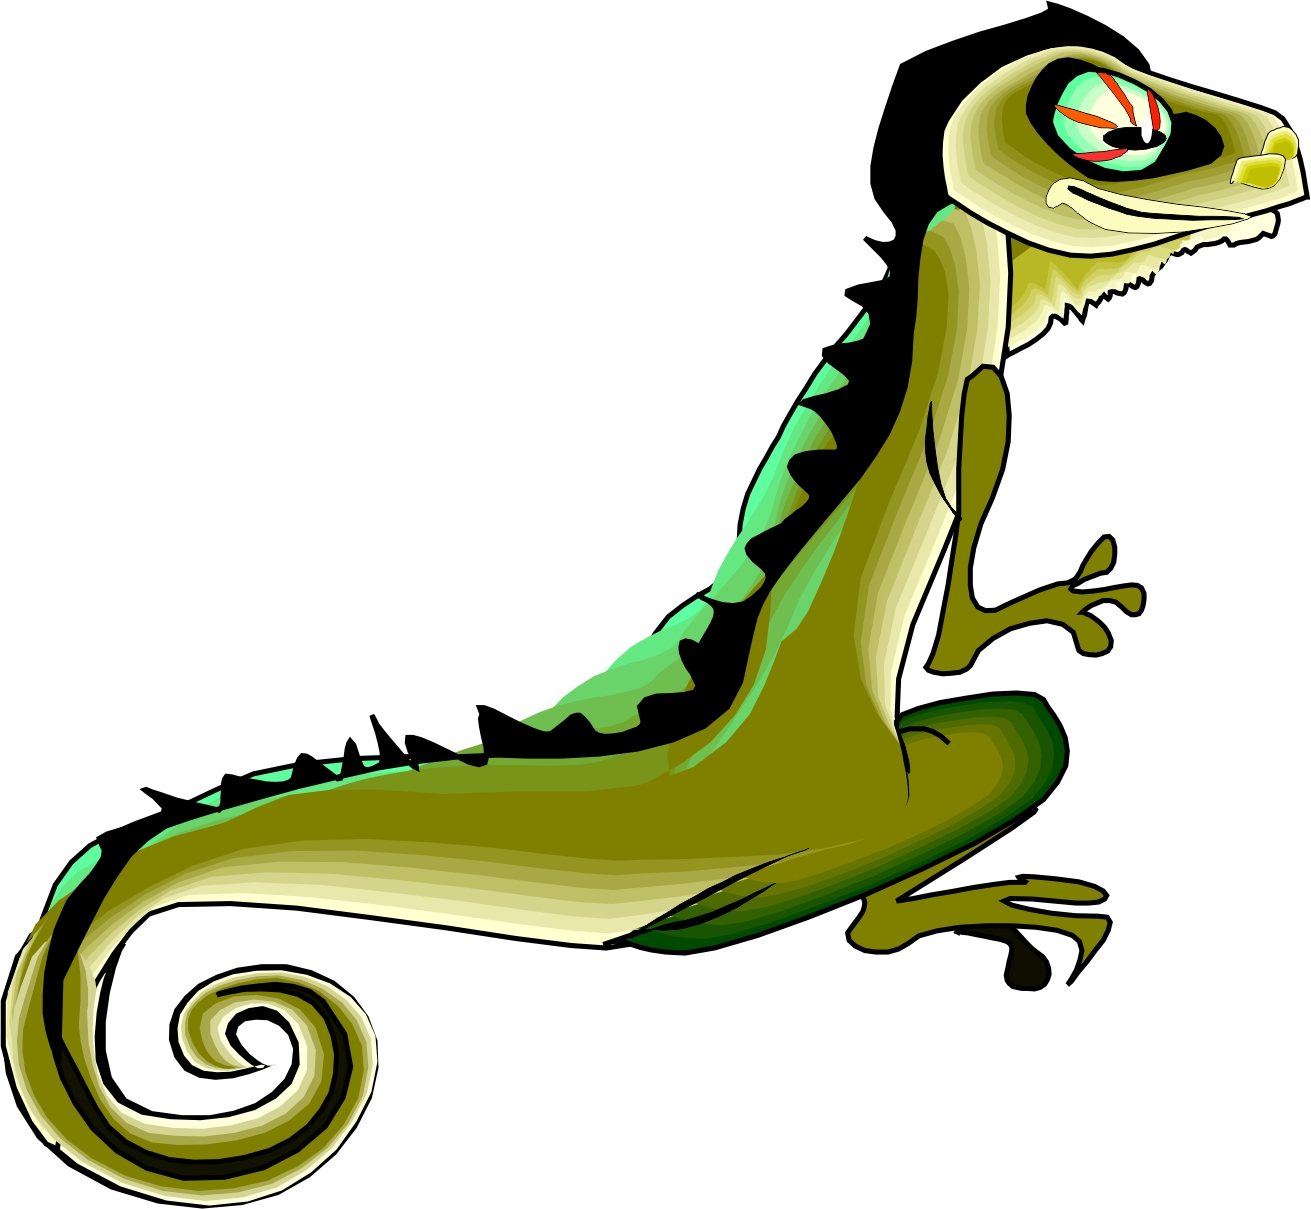 Cartoon Picture Of A Lizard - ClipArt Best